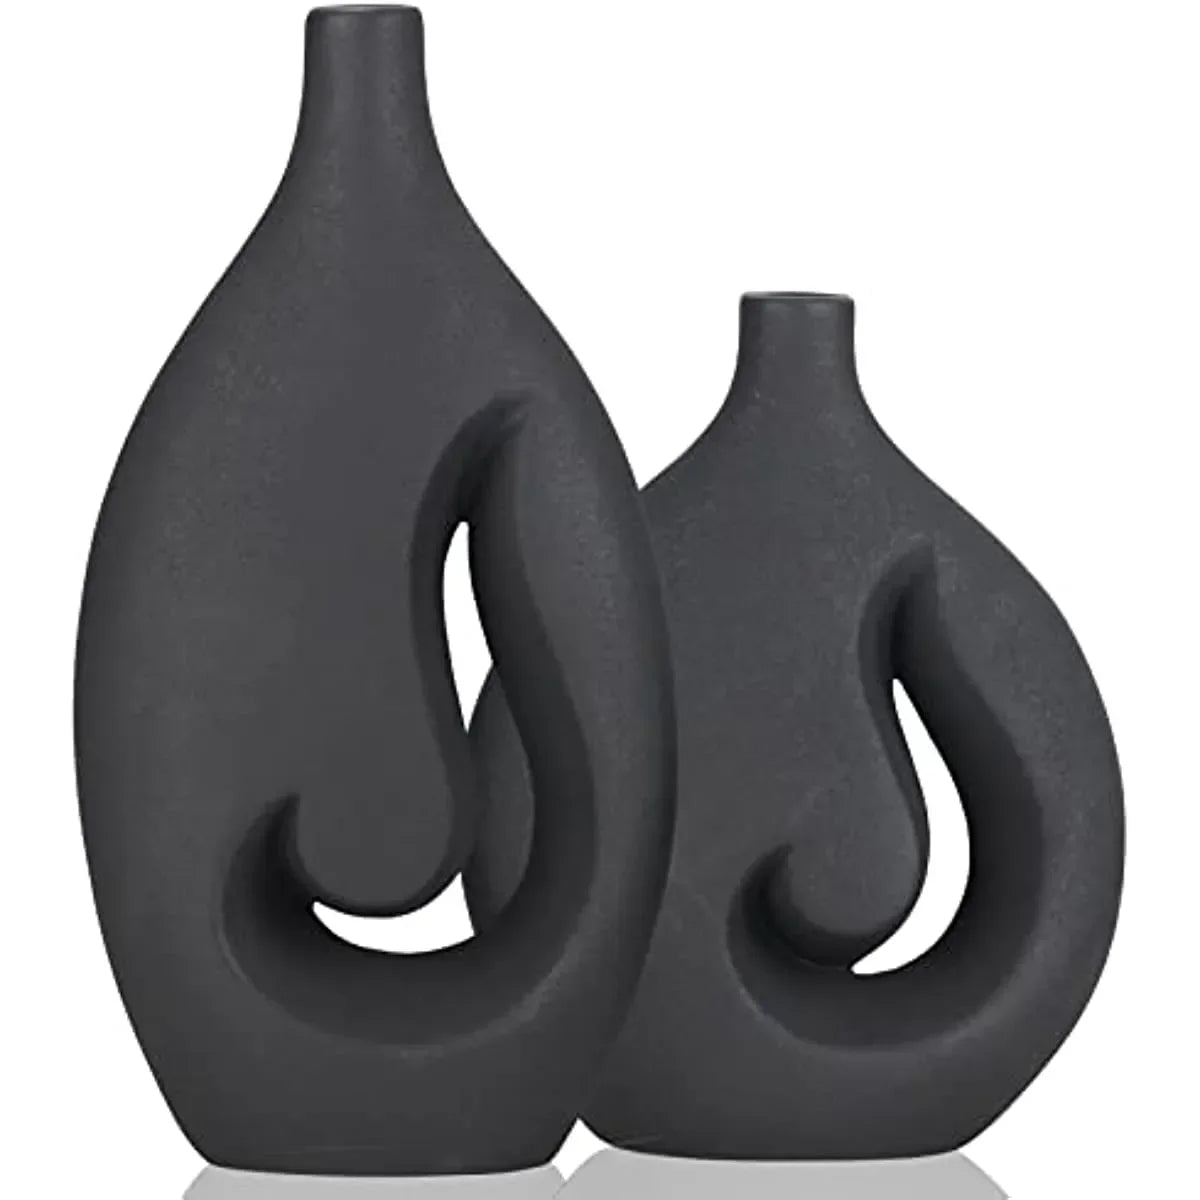 Juego de jarrones huecos de llama de cerámica negra de 2 piezas centrales de jarrón decorativo moderno para la cena de bodas Party Room Office